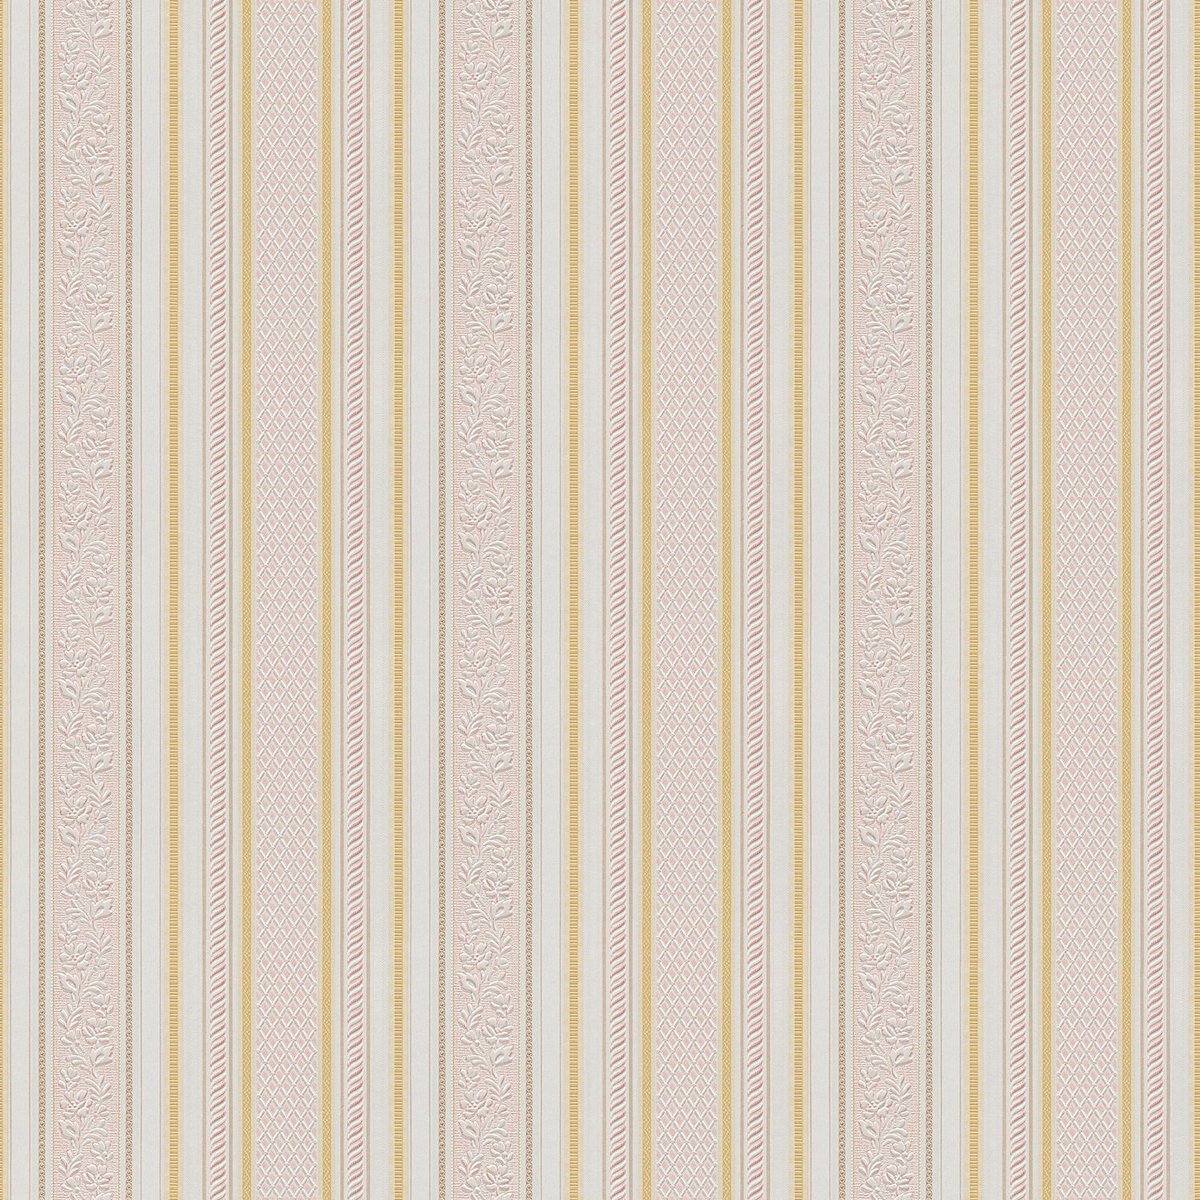 Strepen behang Profhome 765659-GU papier behang licht gestructureerd met strepen mat rood goud wit 5,33 m2 - Profhome